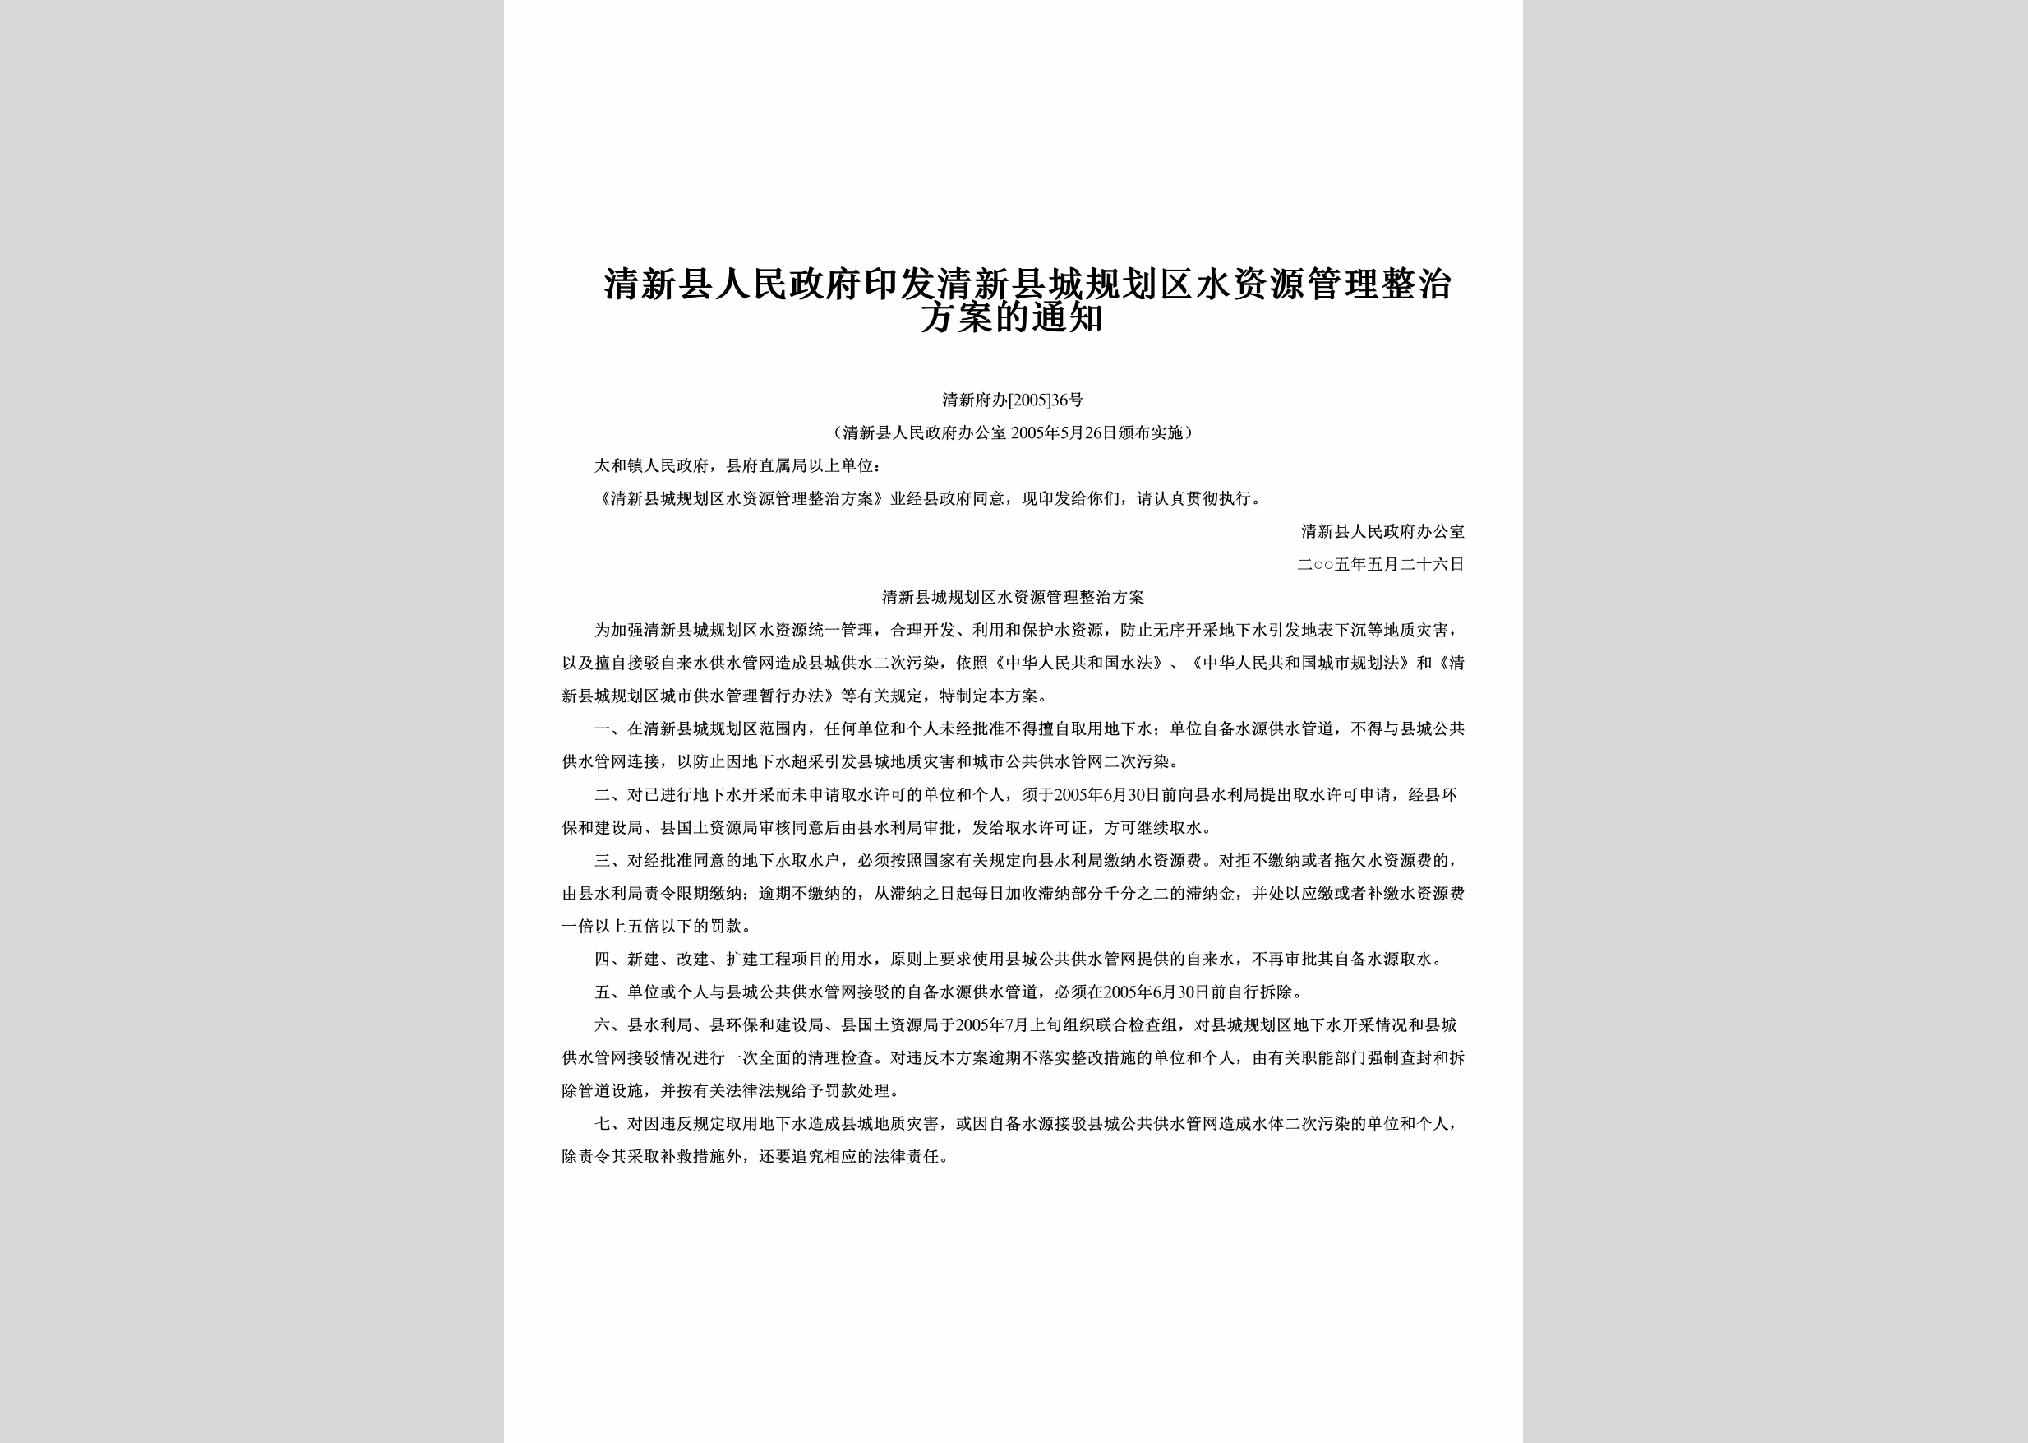 清新府办[2005]36号：印发清新县城规划区水资源管理整治方案的通知